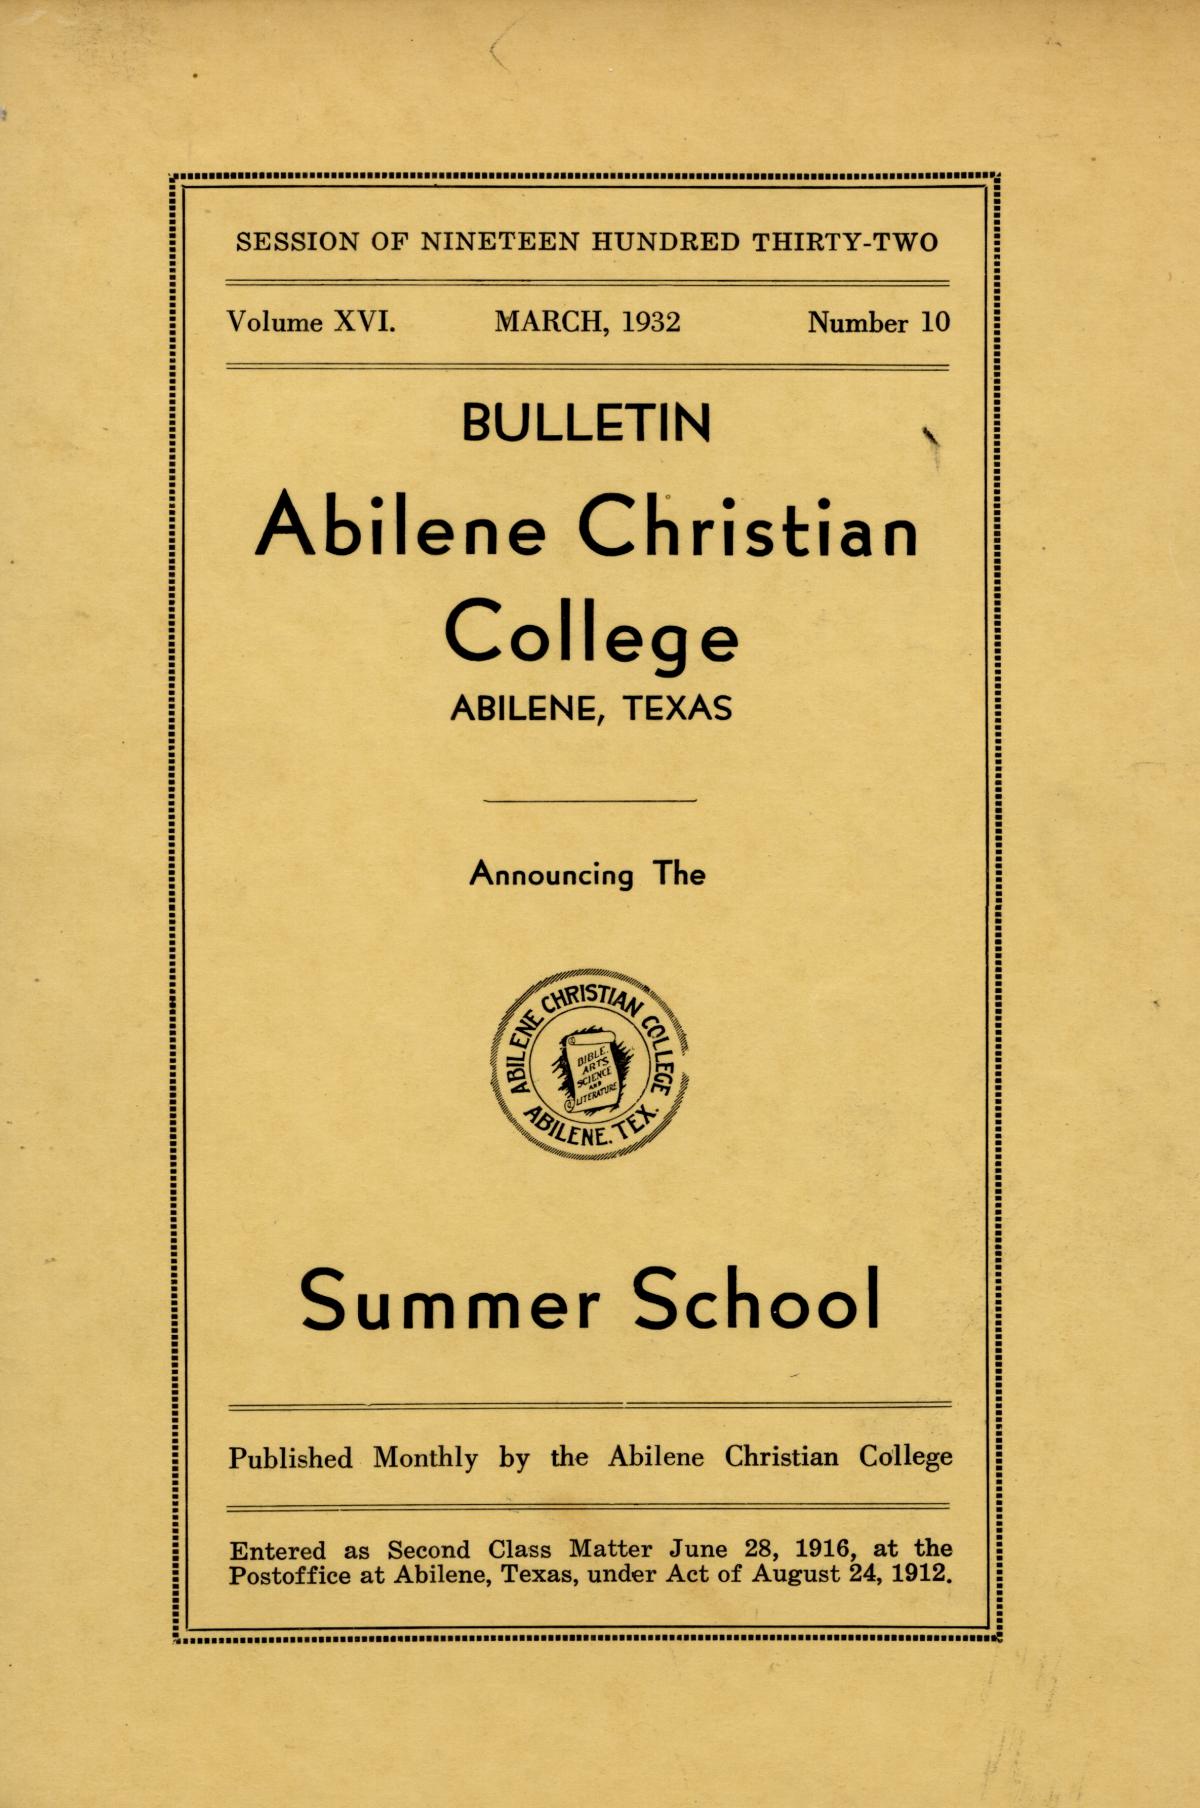 Catalog of Abilene Christian College, 1932
                                                
                                                    Front Cover
                                                